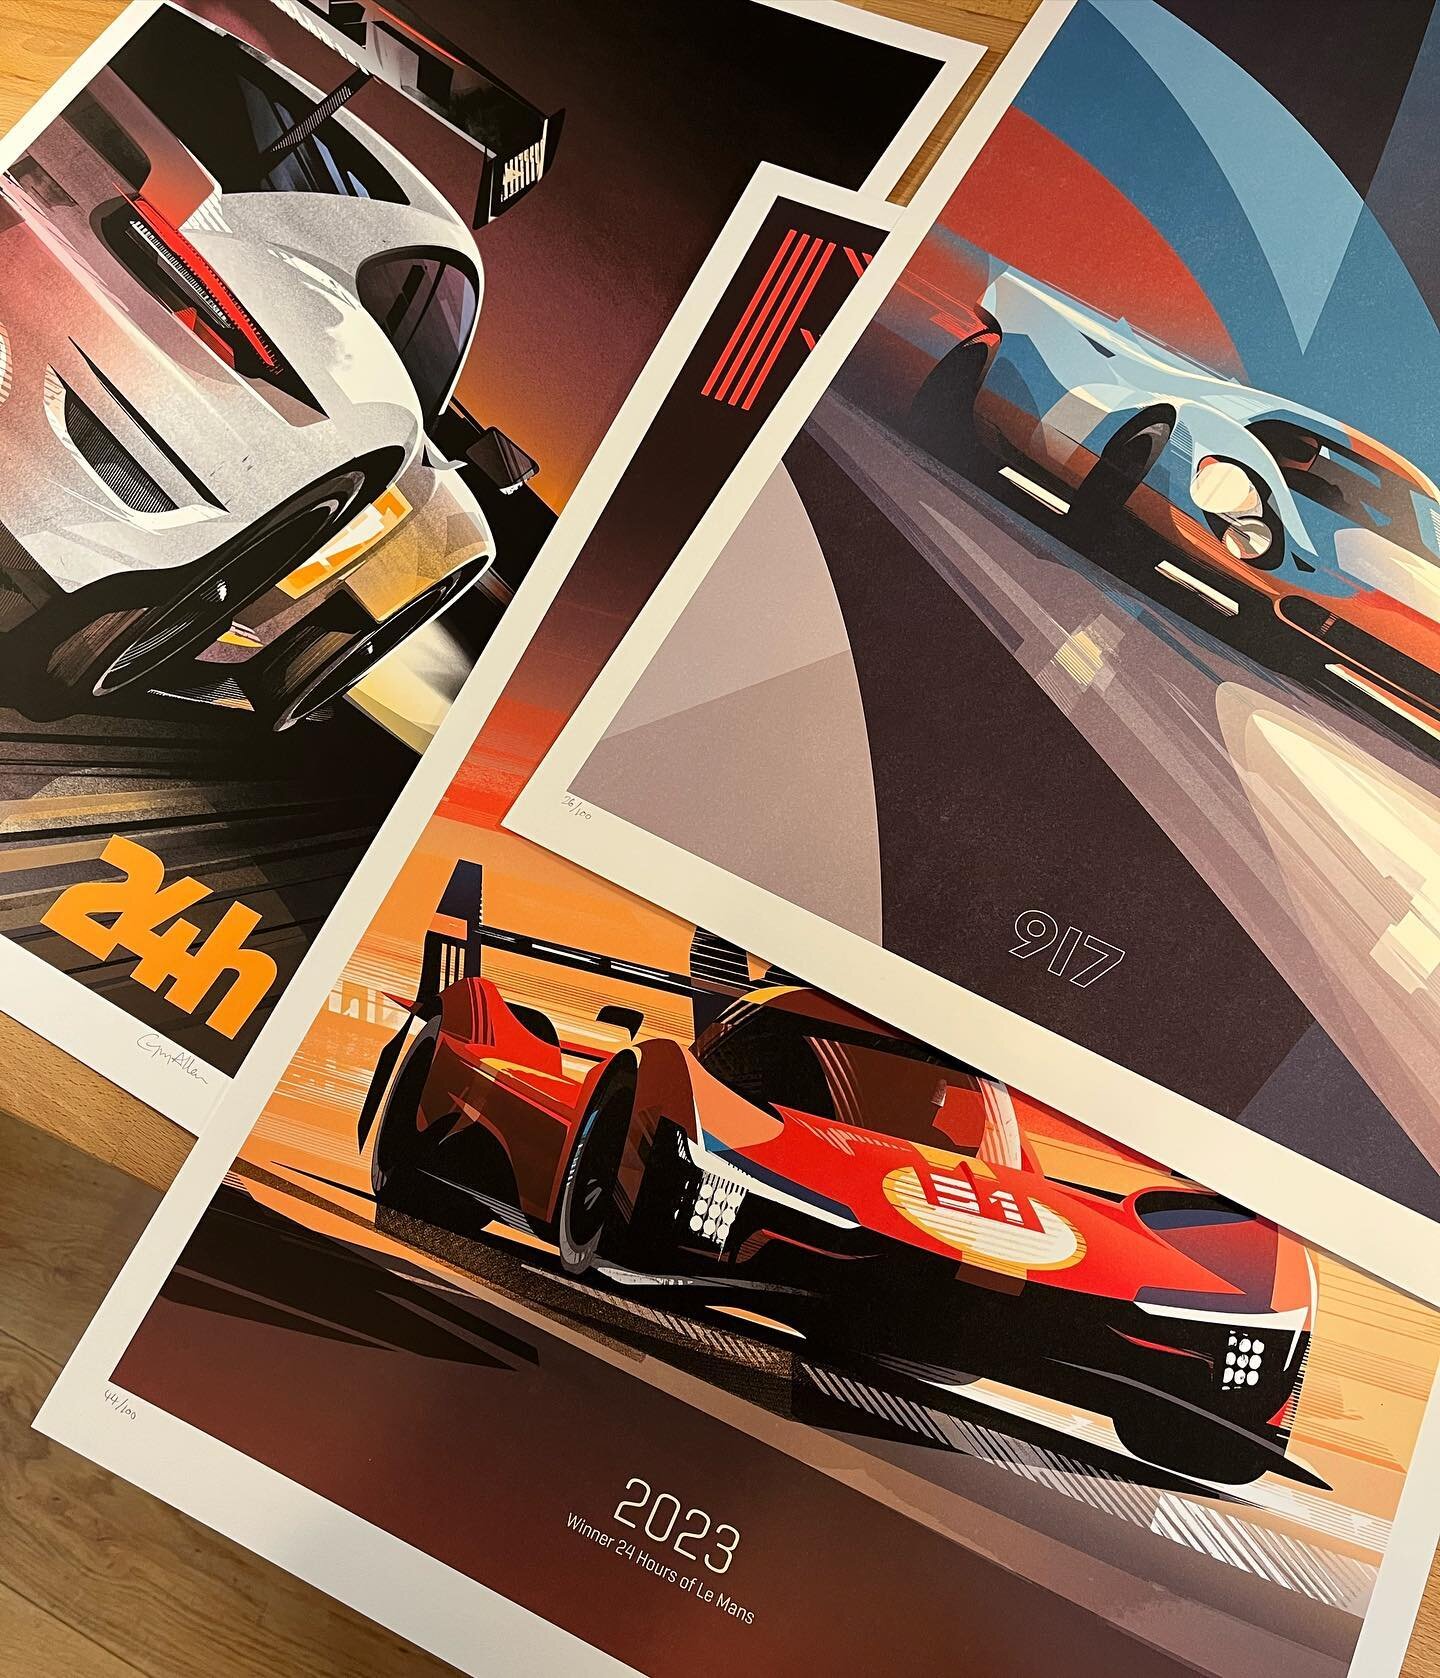 Definite Le Mans theme to this print order.
.
#prints #lemans #porsche #ferrari #911rsr #porsche917 #illustration #cars #motorsport #artwork